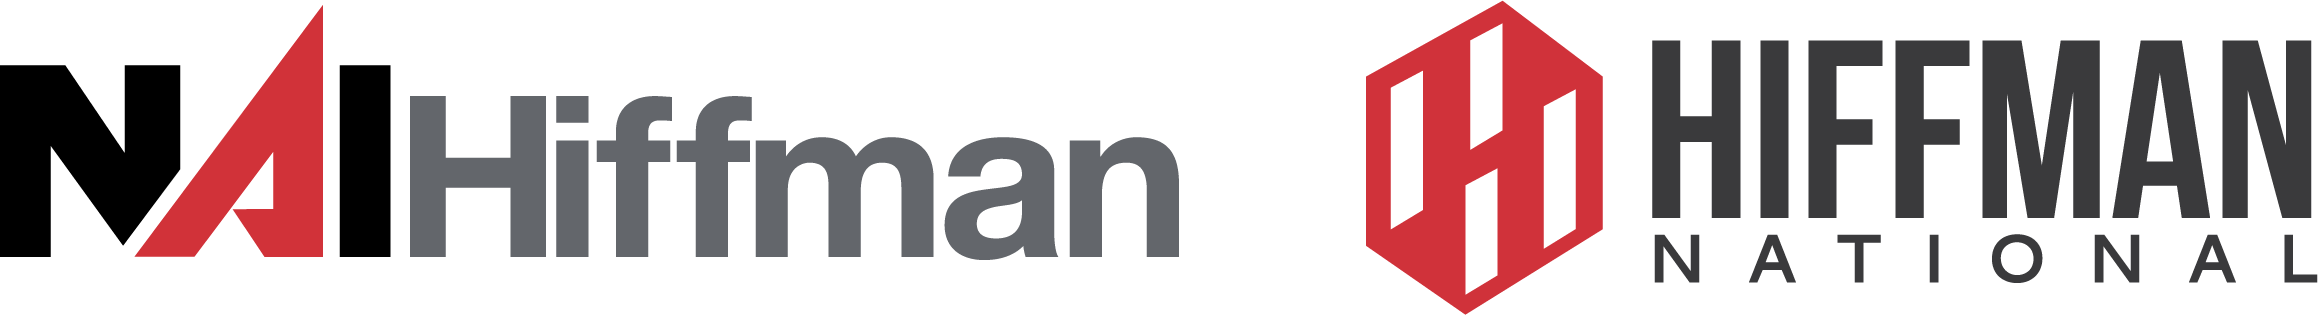 NAI Hiffman | Hiffman National logo